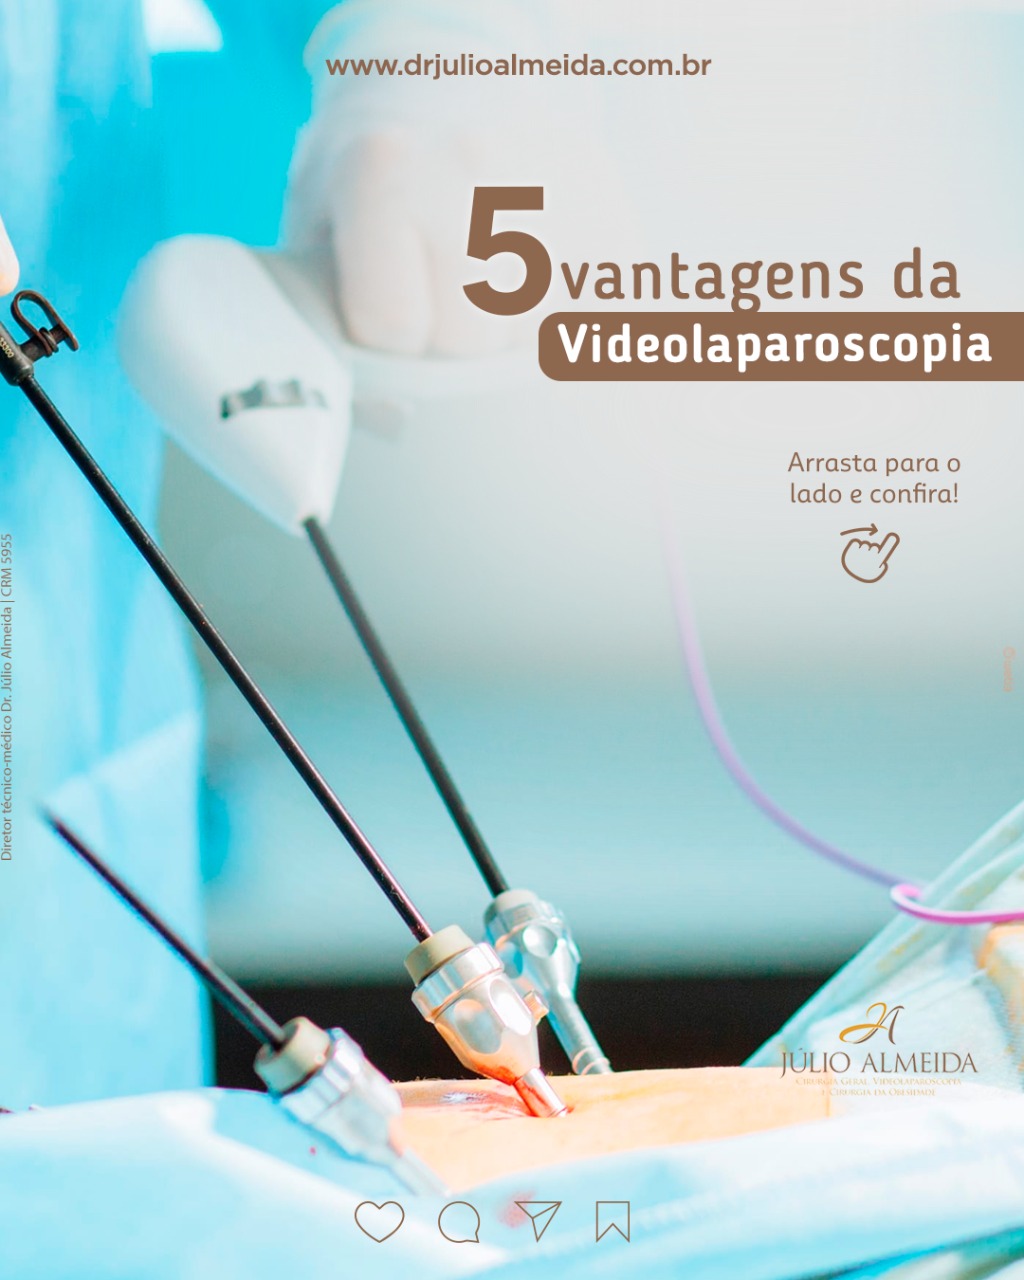 Dr Alexandre - 5 vantagens da Videolaparoscopia